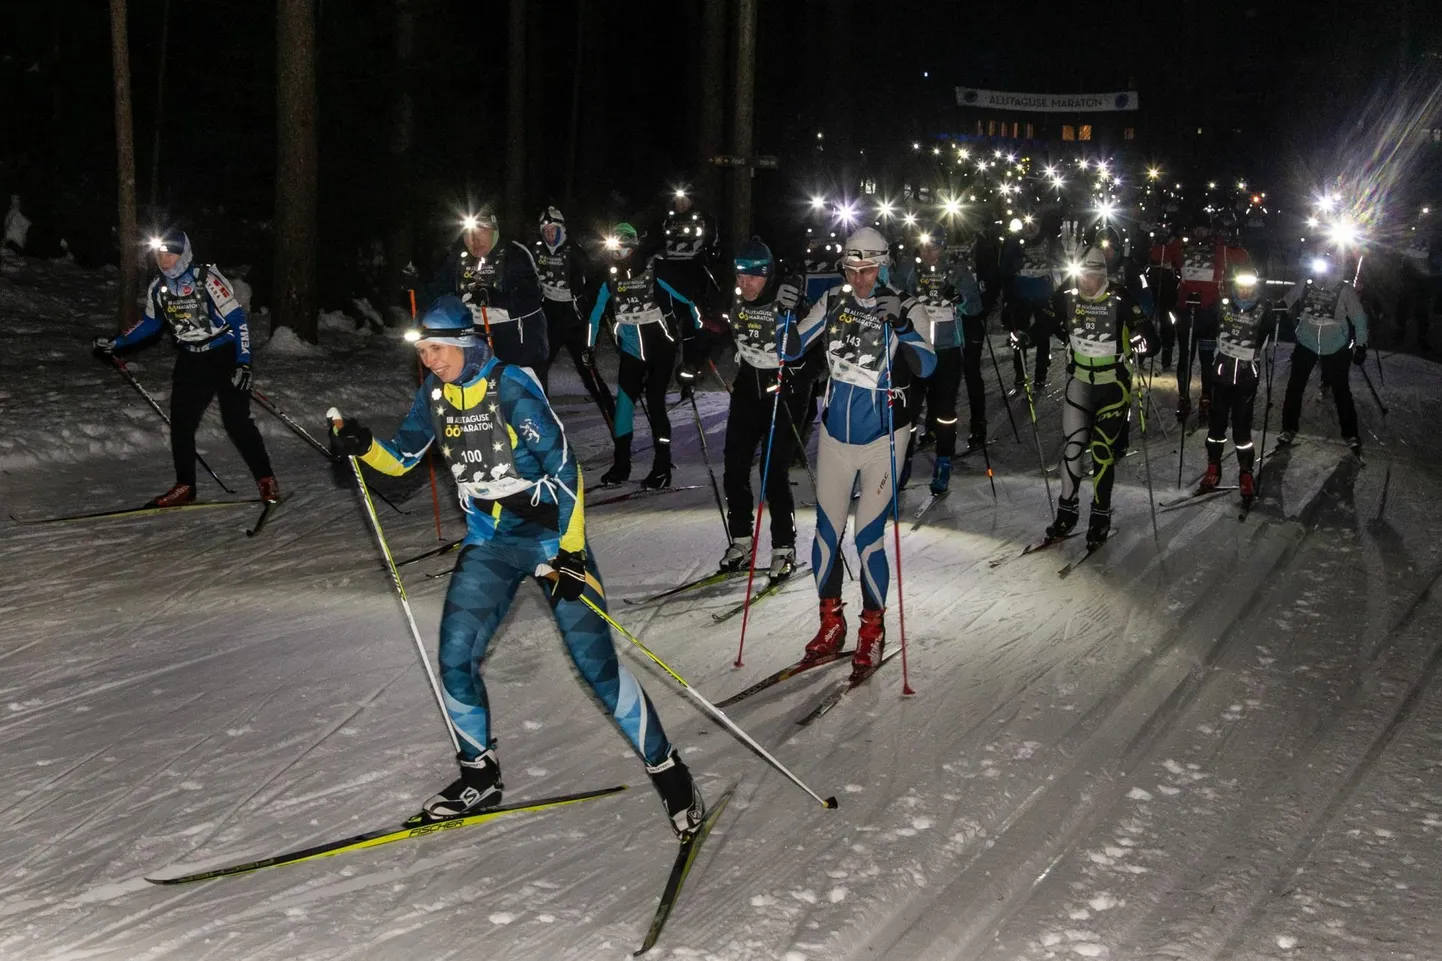 Alutaguse maratoni programm algab reede, 9. veebruari õhtul öömaratoniga. Öömaratonidel on korduvalt osalenud ka president Kersti Kaljulaid.